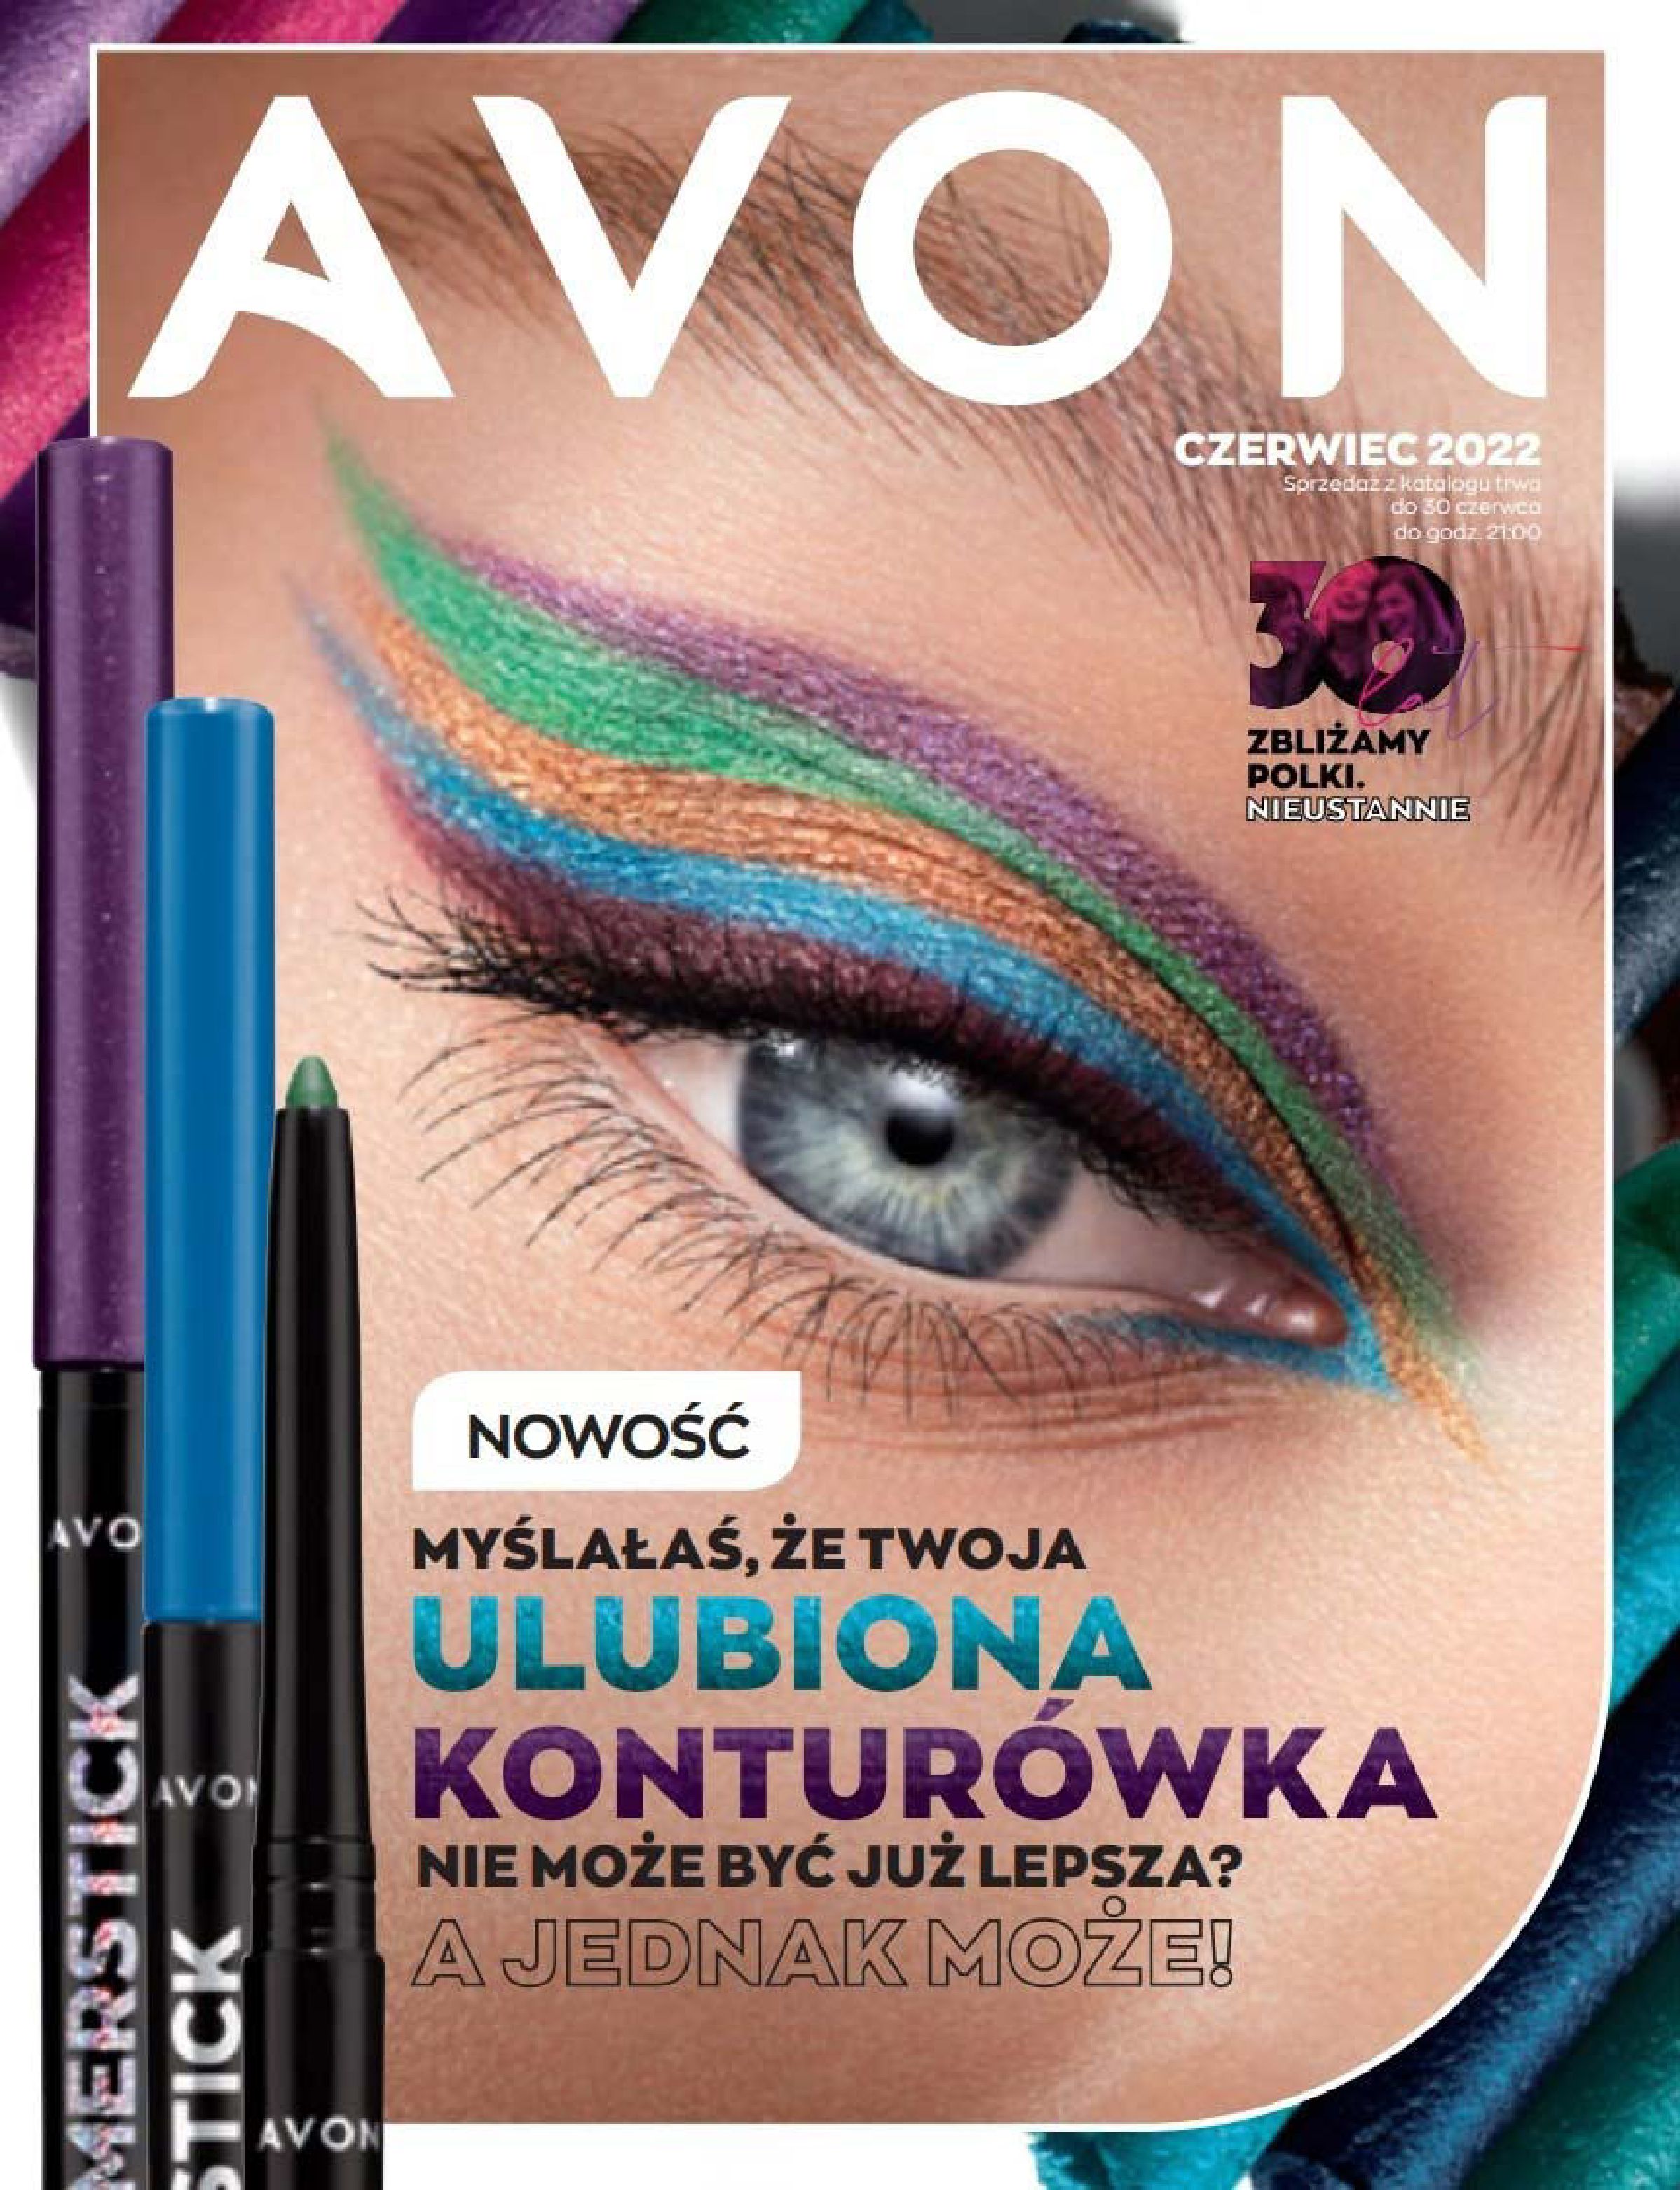 Gazetka Avon: Katalog Avon - Czerwiec 2022 2022-04-16 page-1